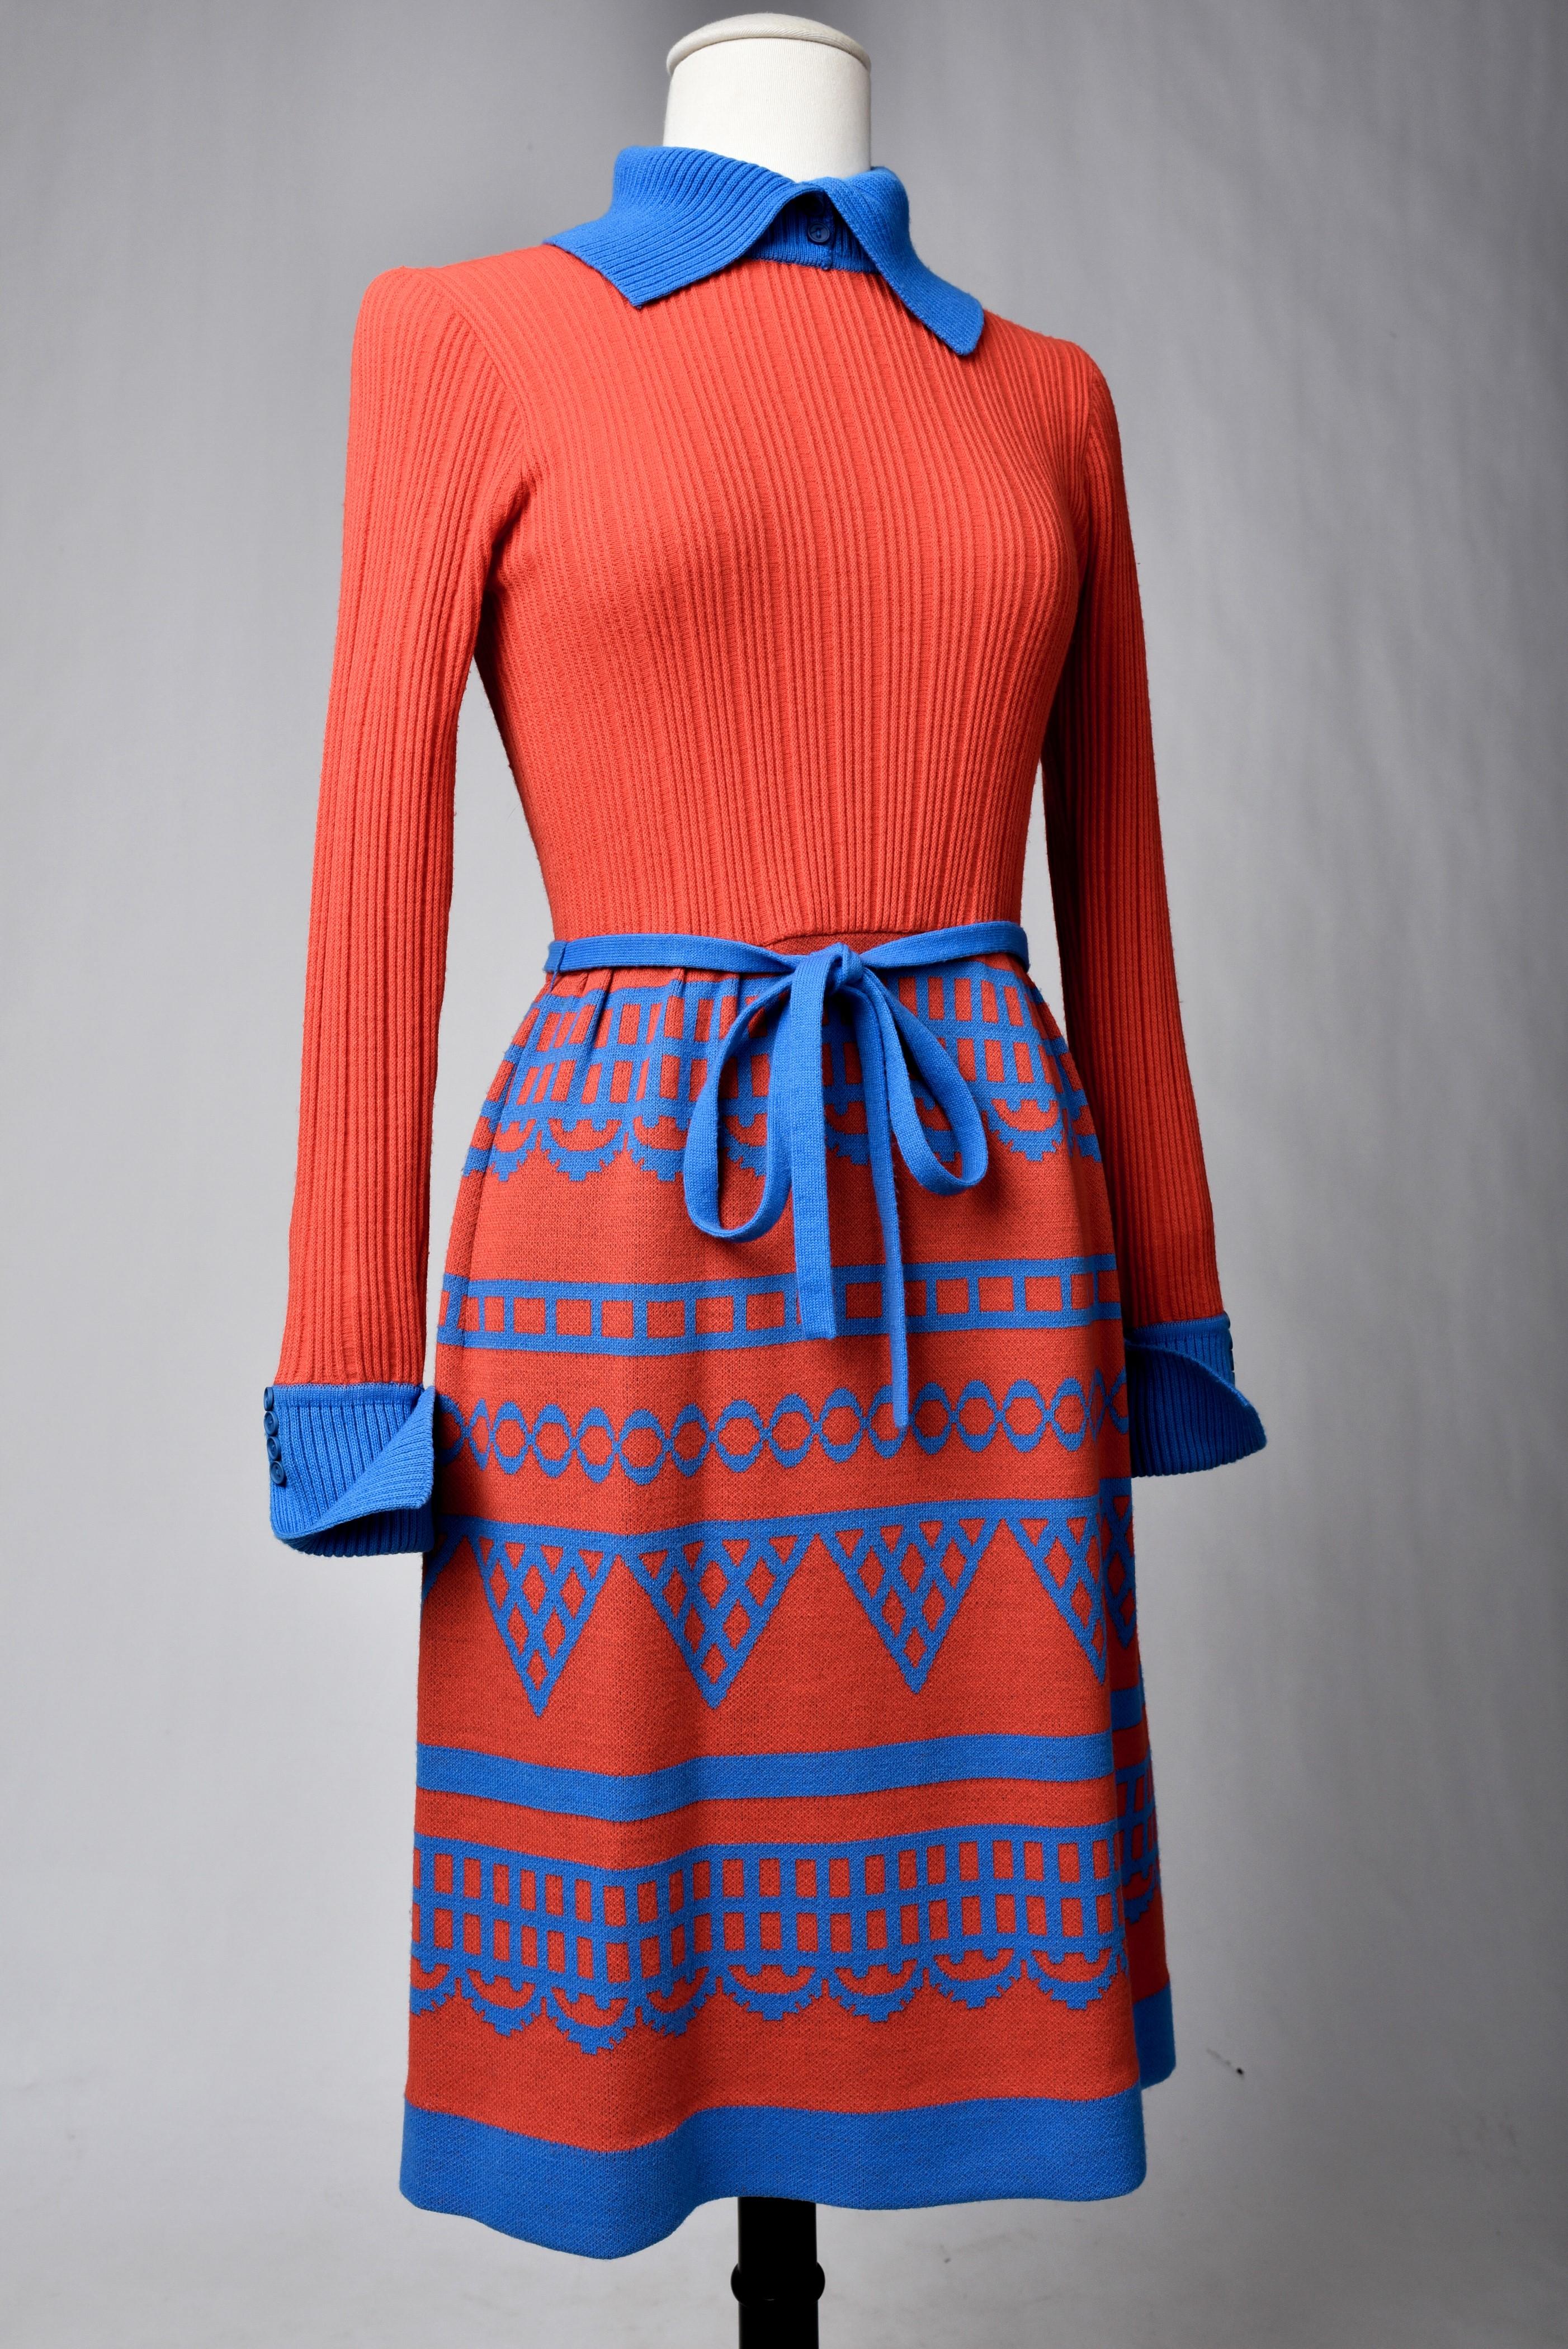 Circa 1975 - 1980

France - Angleterre

Robe de jour en tricot de laine rouge écarlate et bleu signée Miss Féraud par Rembrandt, branche britannique de la célèbre maison française.  Robe de jour droite, manches longues et col roulé avec poignets à